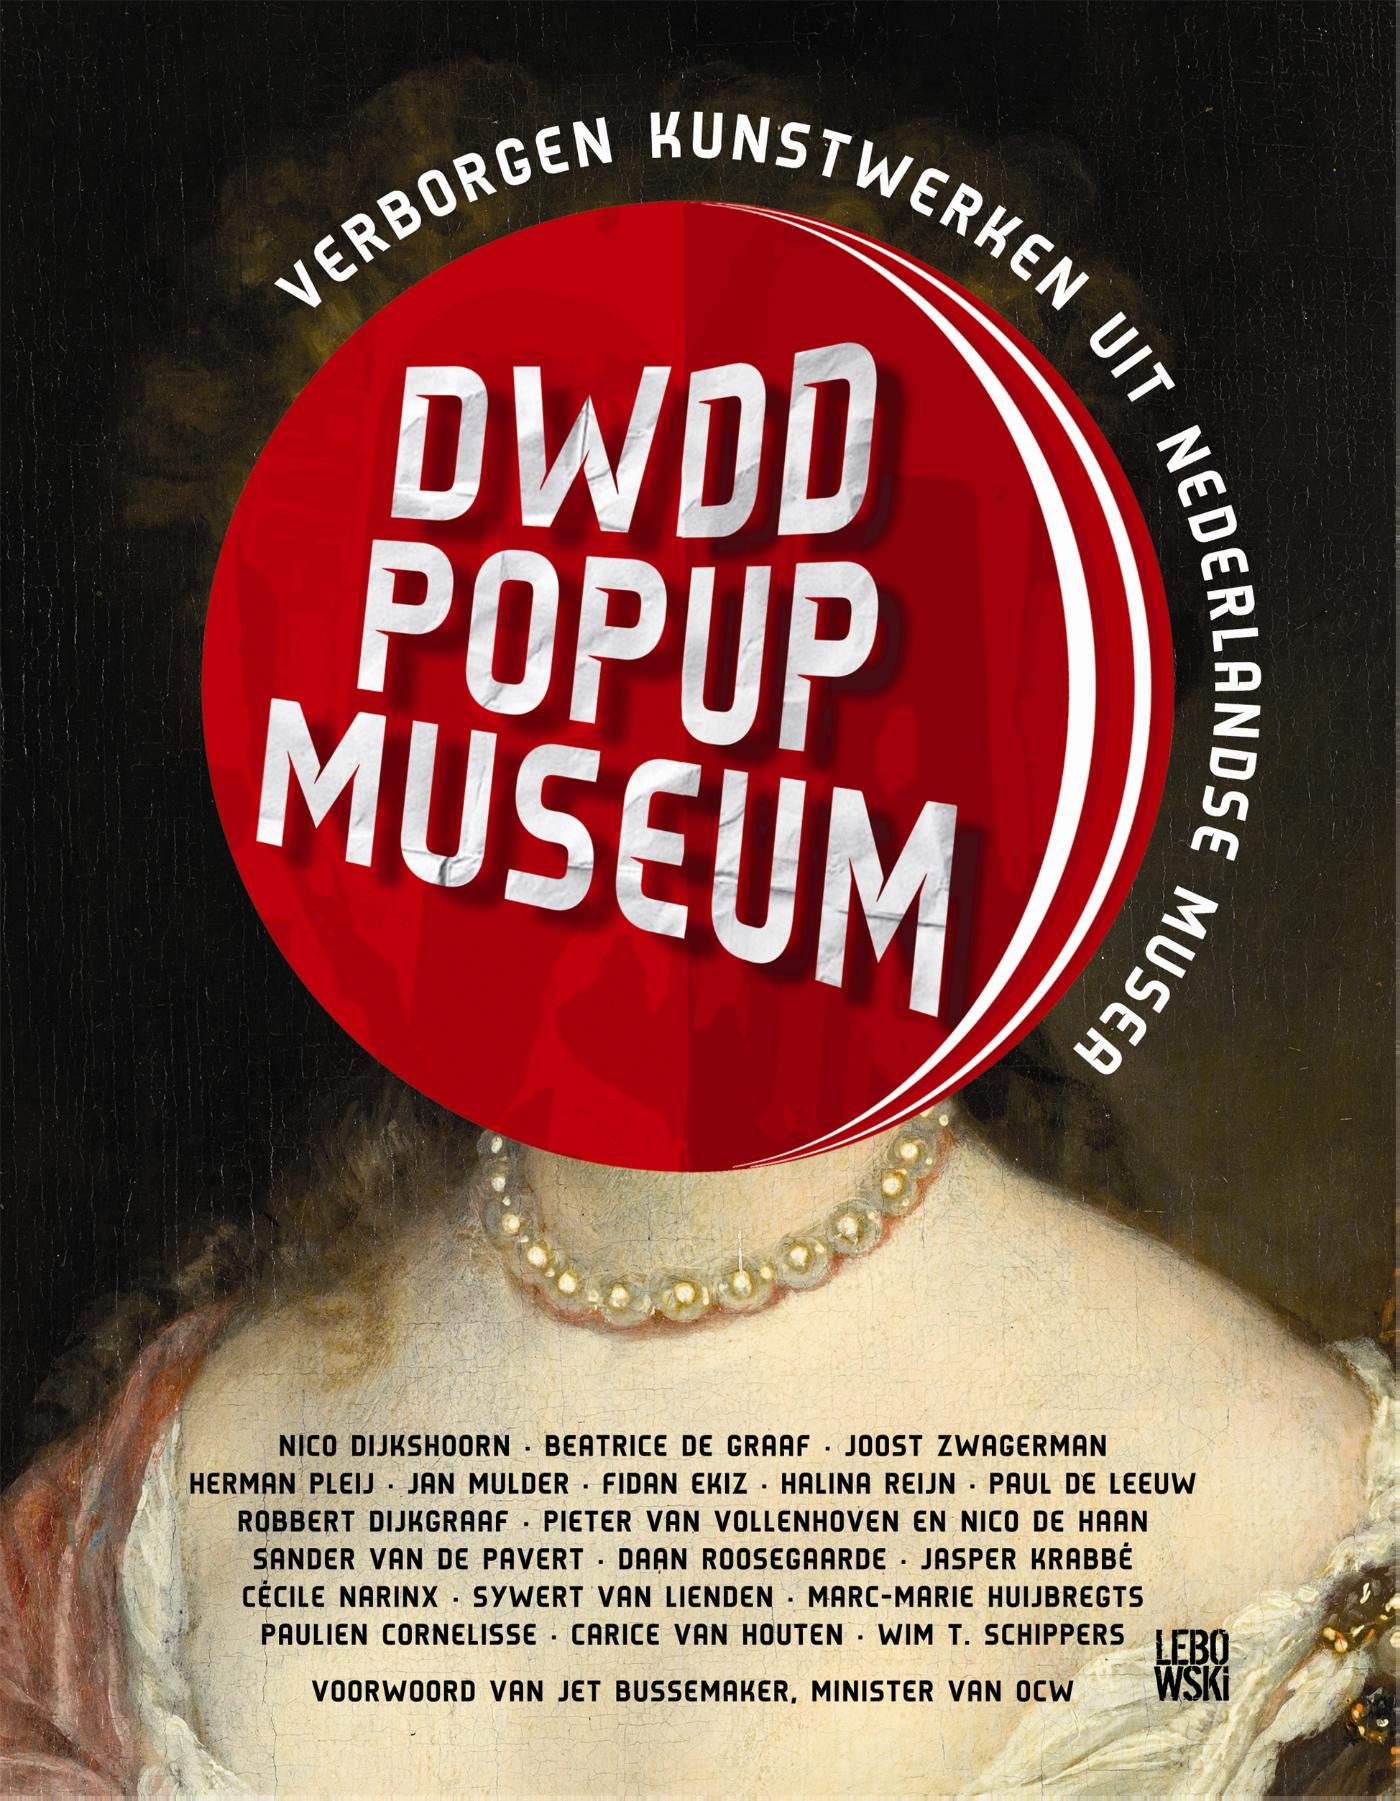 DWDD pop-up museum (Ebook)